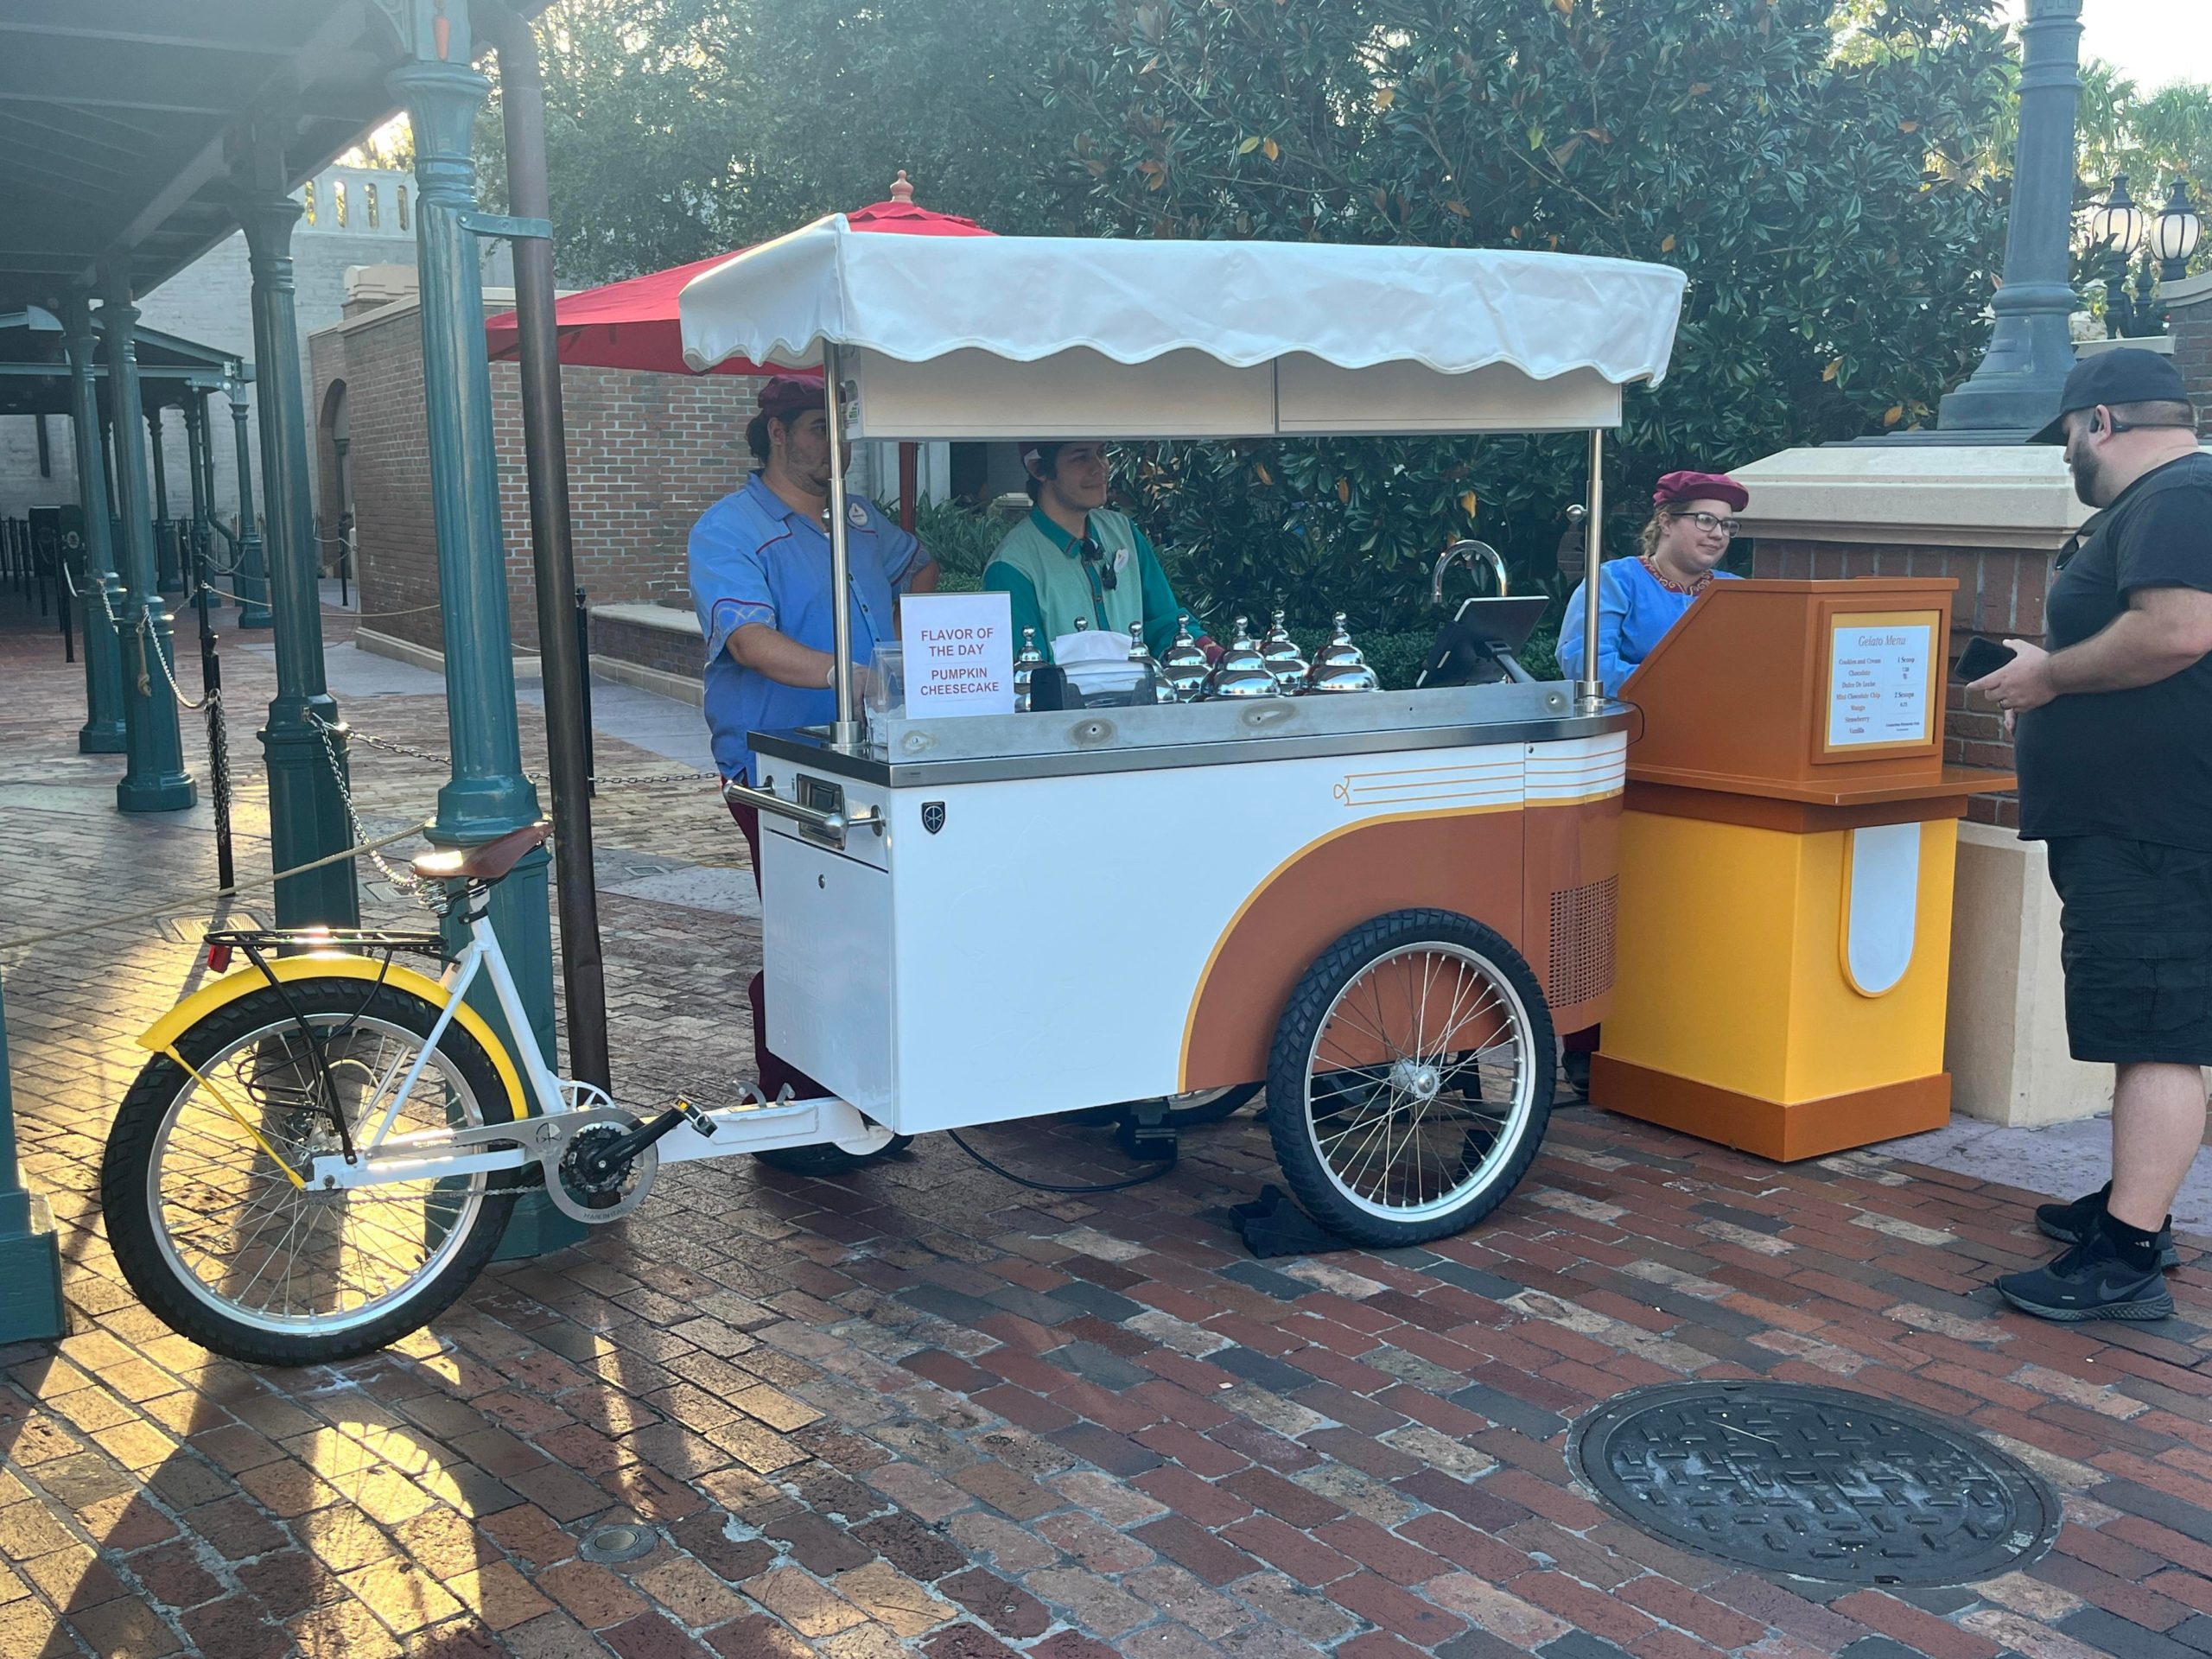 muppet courtyard gelato cart